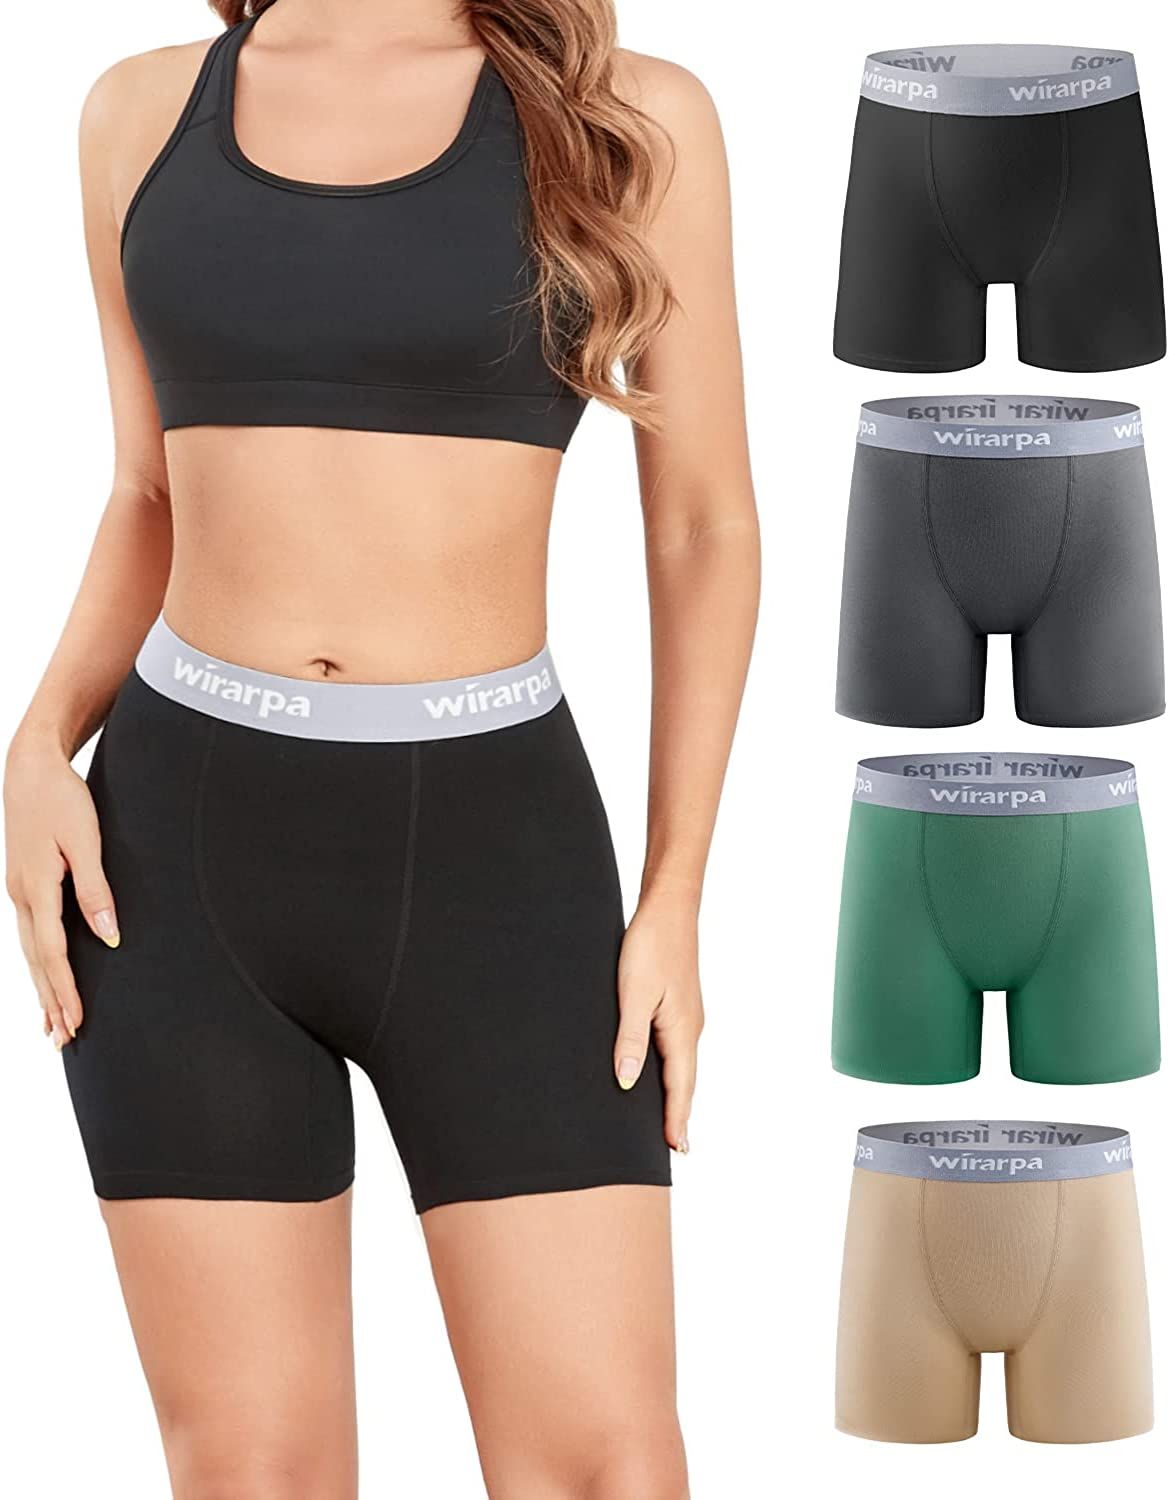 wirarpa Women's Boxer Briefs Cotton Underwear Anti Chafing Boy Shorts Panties 5.5" Inseam 4 Pack | Amazon (US)